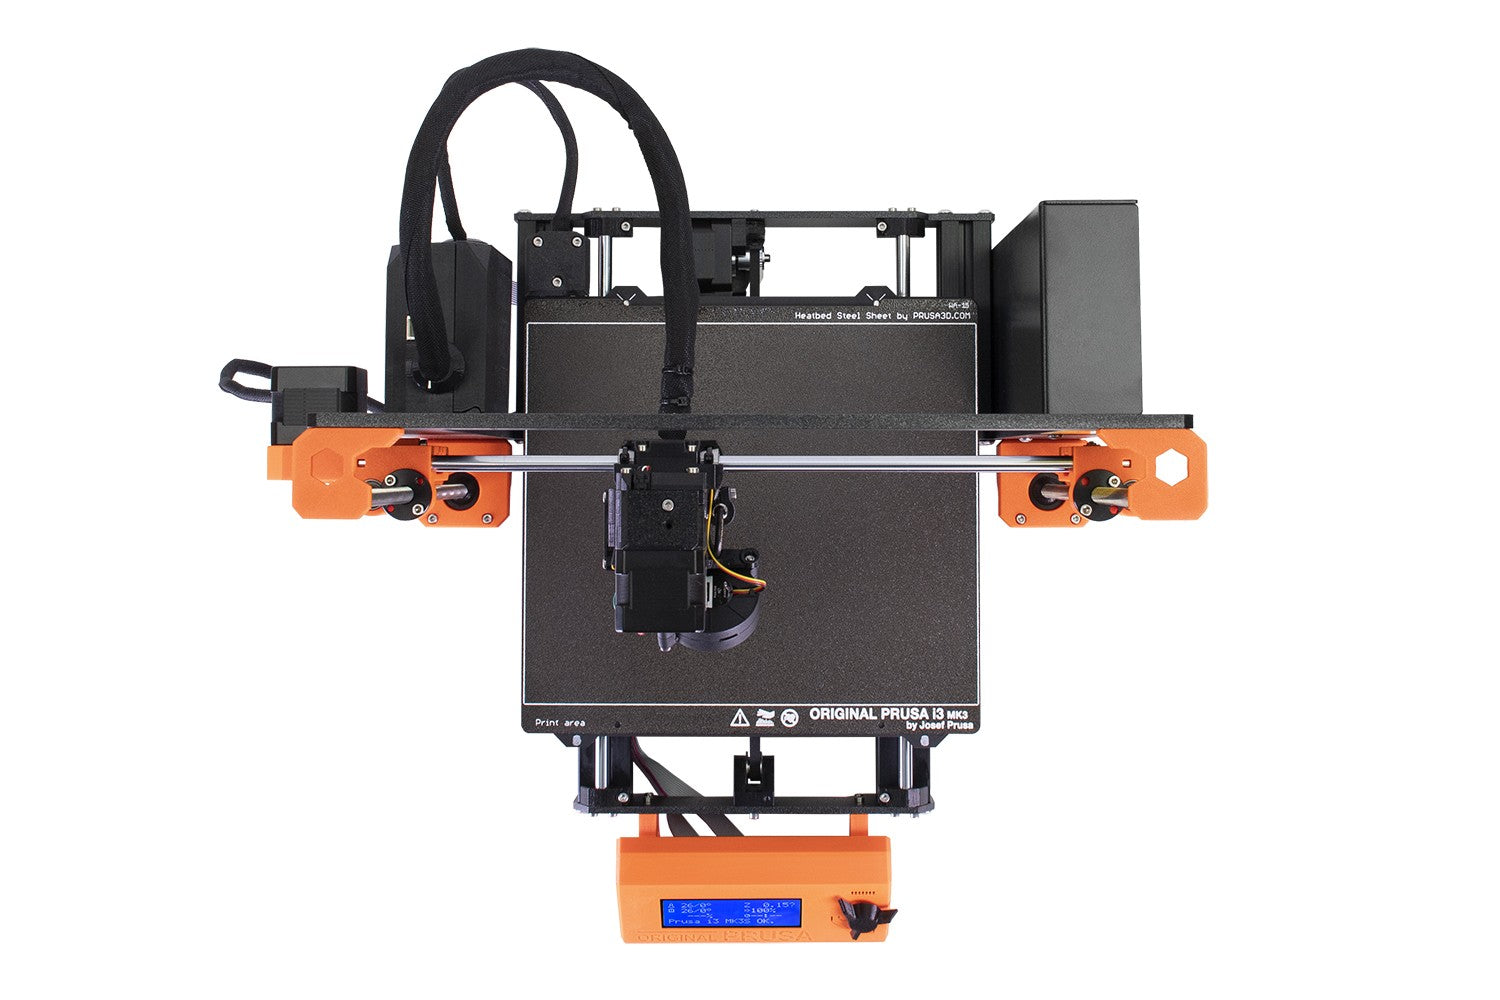 Virksomhedsbeskrivelse ambition Haiku Original Prusa i3 MK3S+ 3D printer – Printed Solid